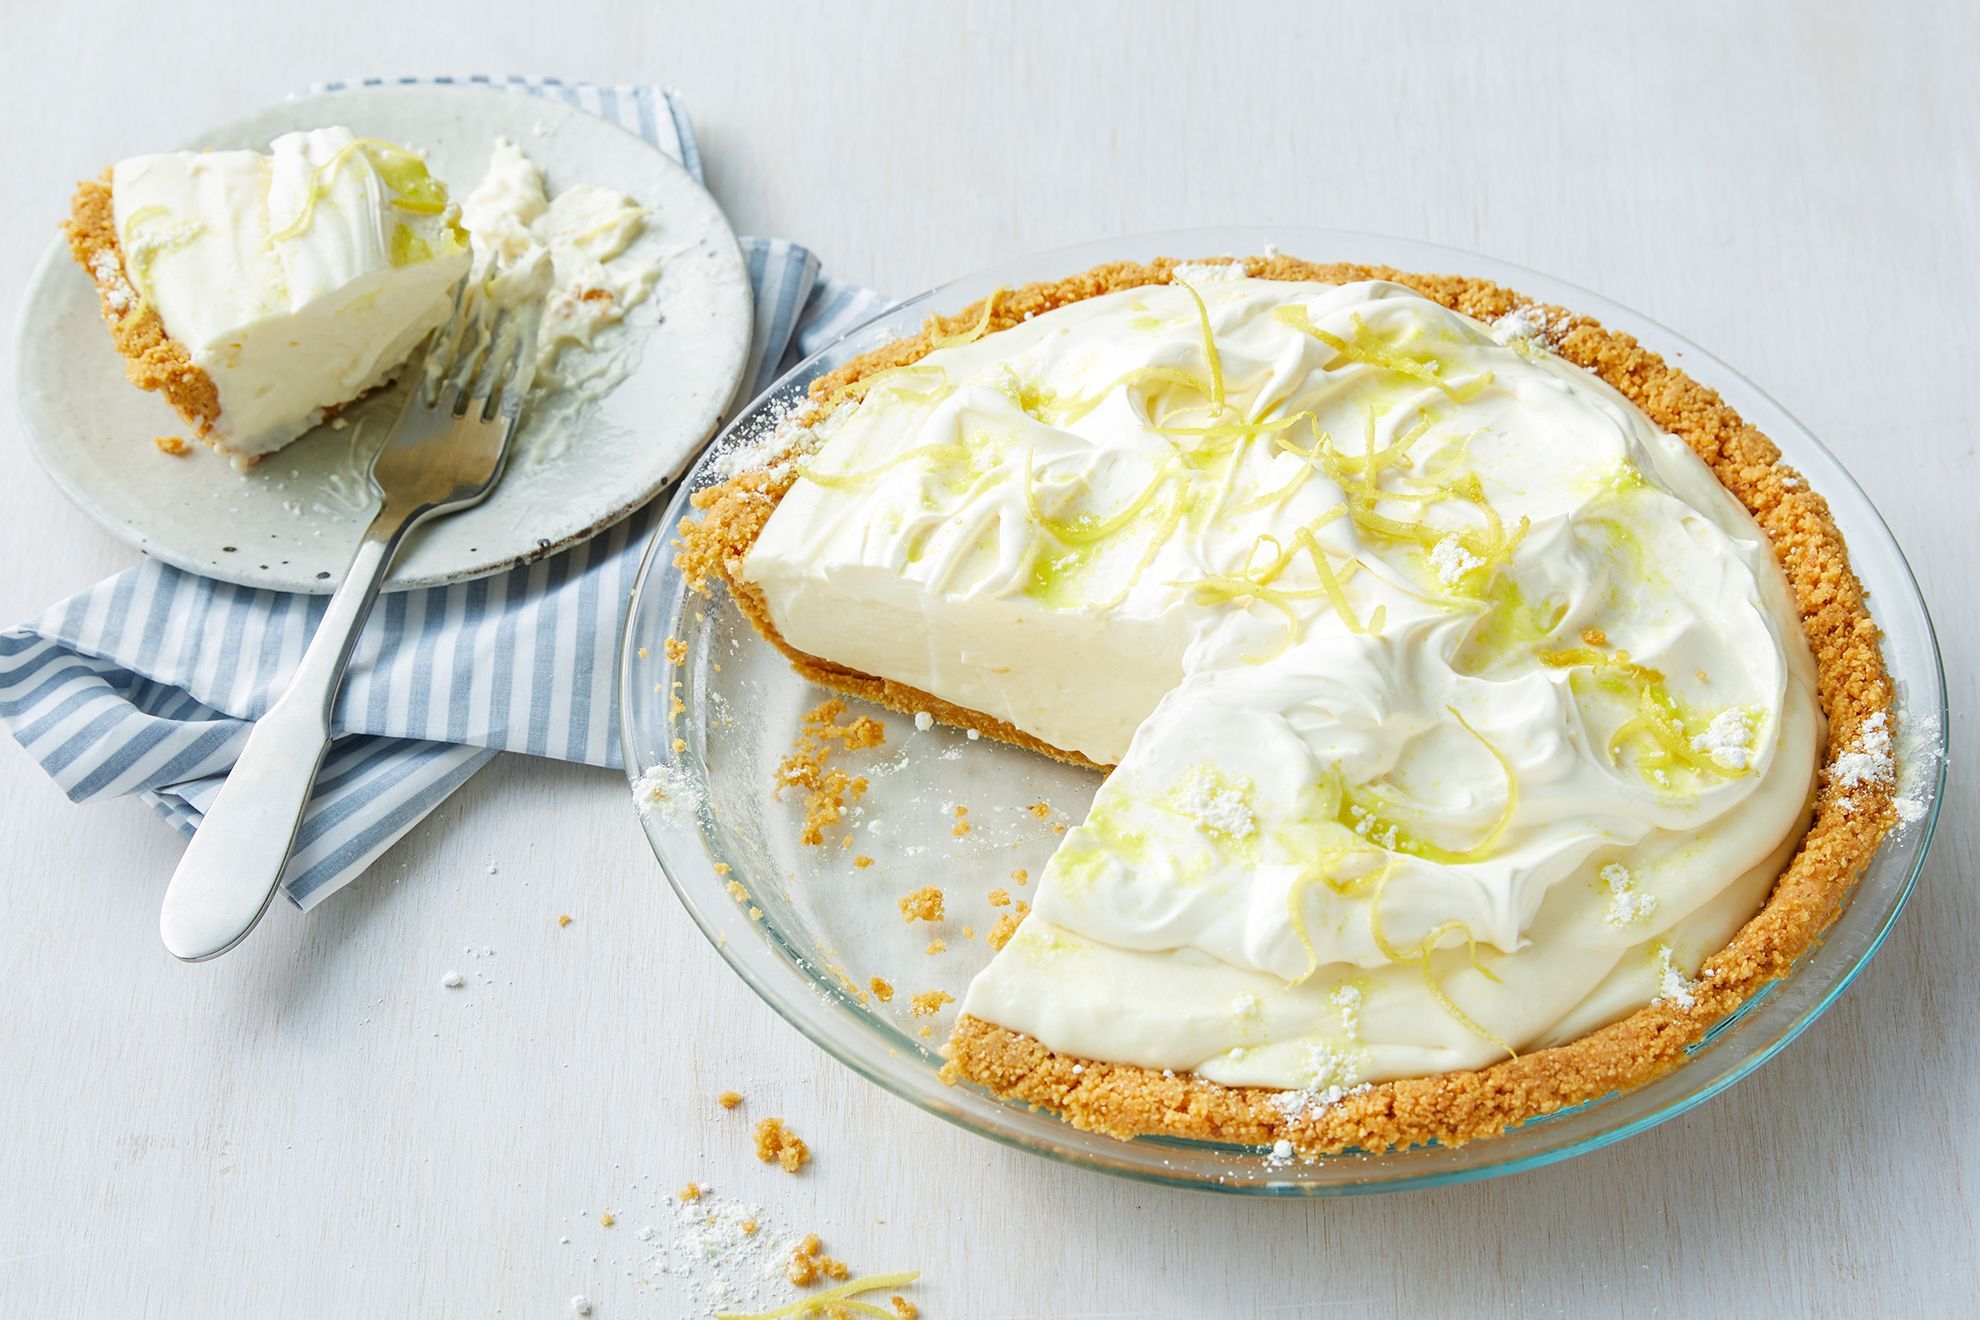 Φτιάξε την πιο εύκολη lemon pie σε λίγα λεπτά!